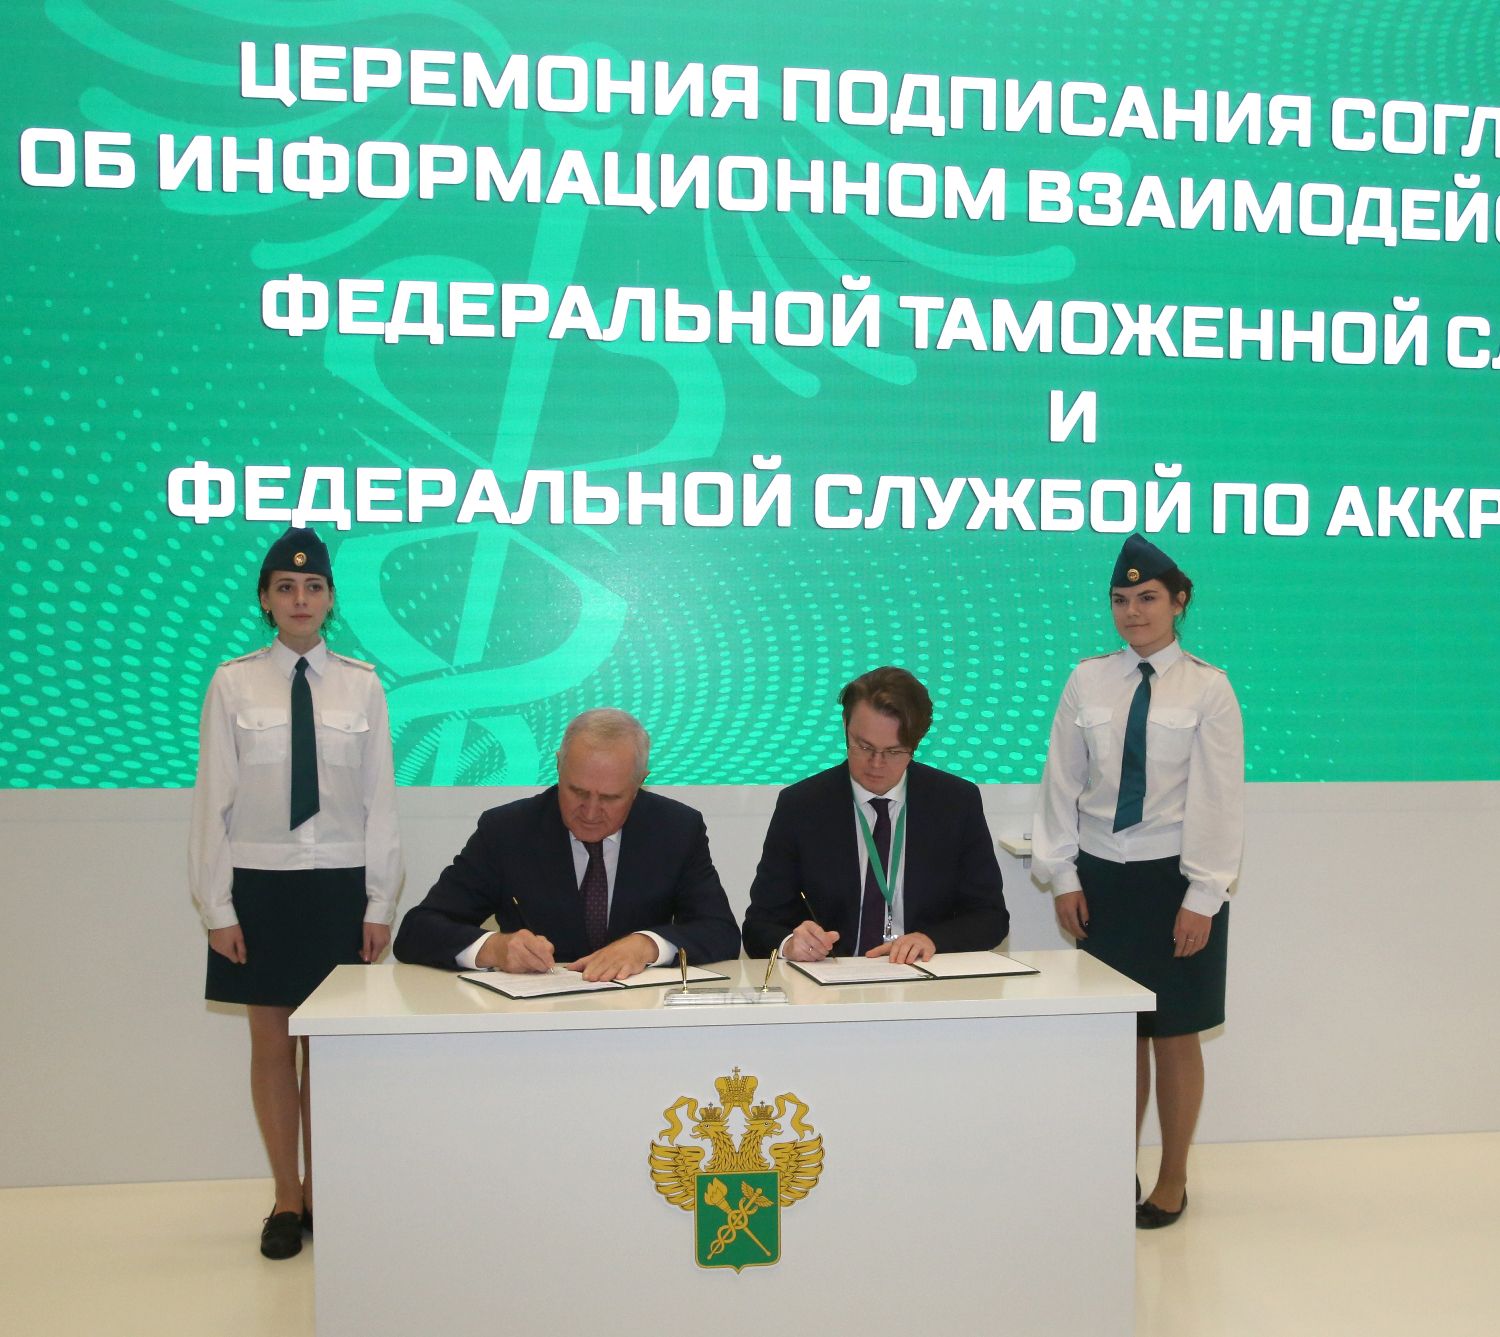 Подписано новое соглашение об информационном взаимодействии в сфере аккредитации